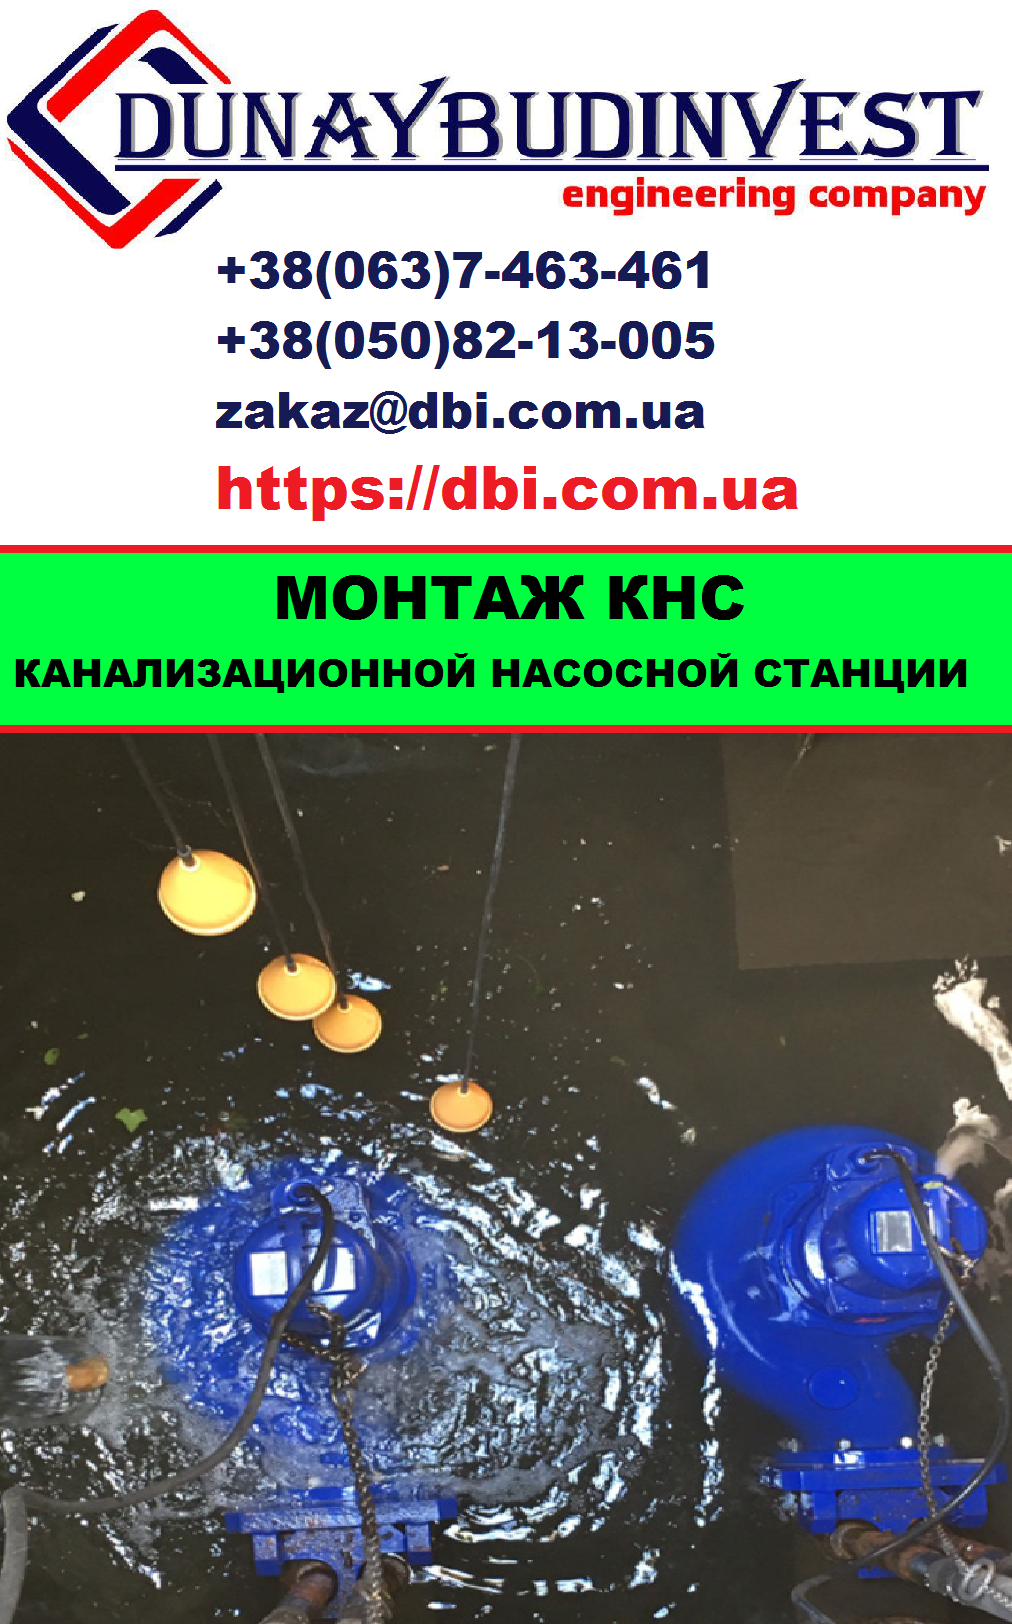 Монтаж и установка КНС (канализационной насосной станции) киев украина